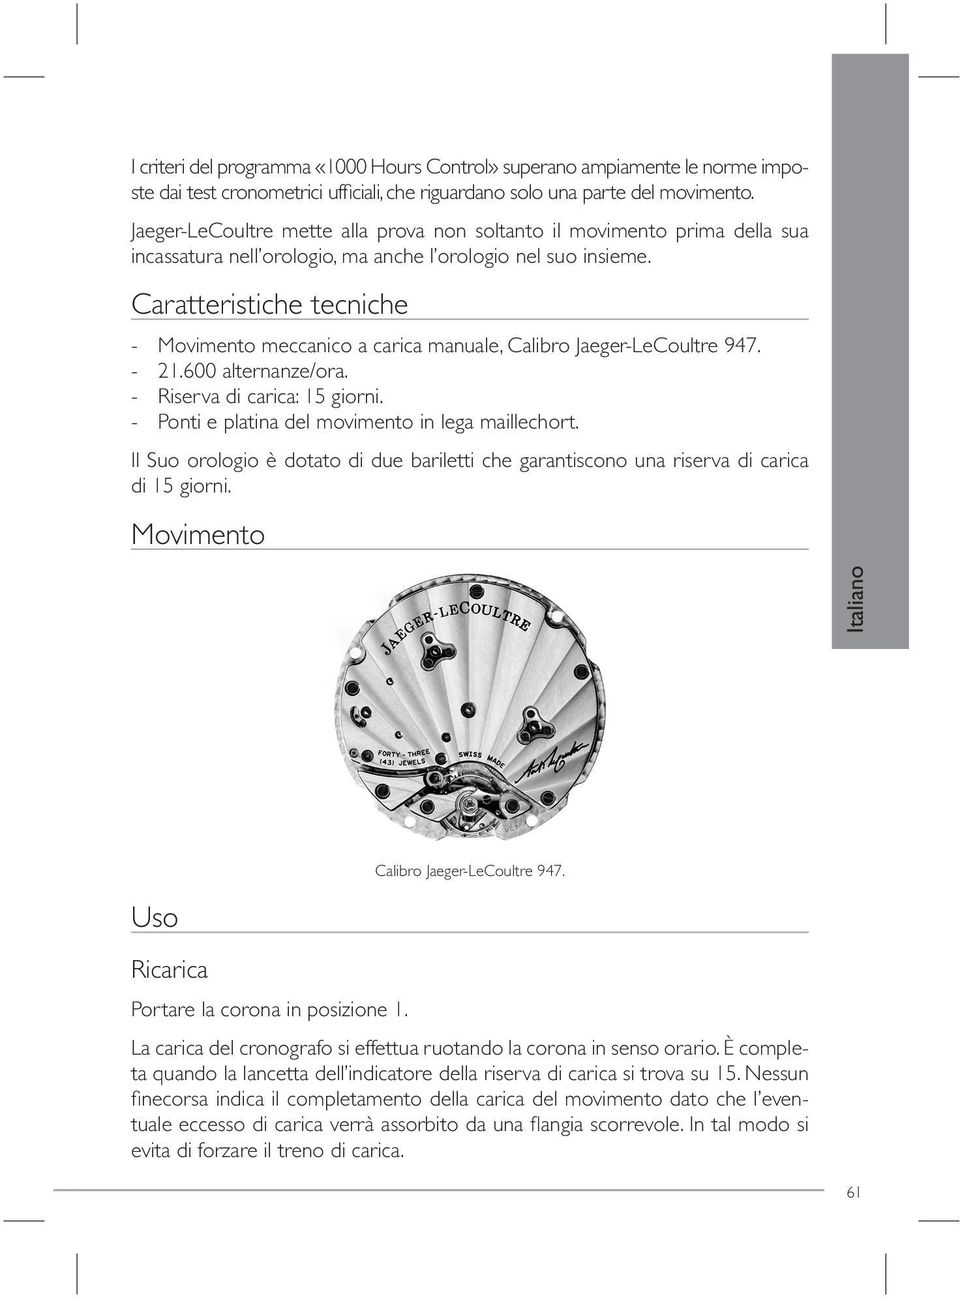 Caratteristiche tecniche - Movimento meccanico a carica manuale, Calibro Jaeger-LeCoultre 947. - 21.600 alternanze/ora. - Riserva di carica: 15 giorni.